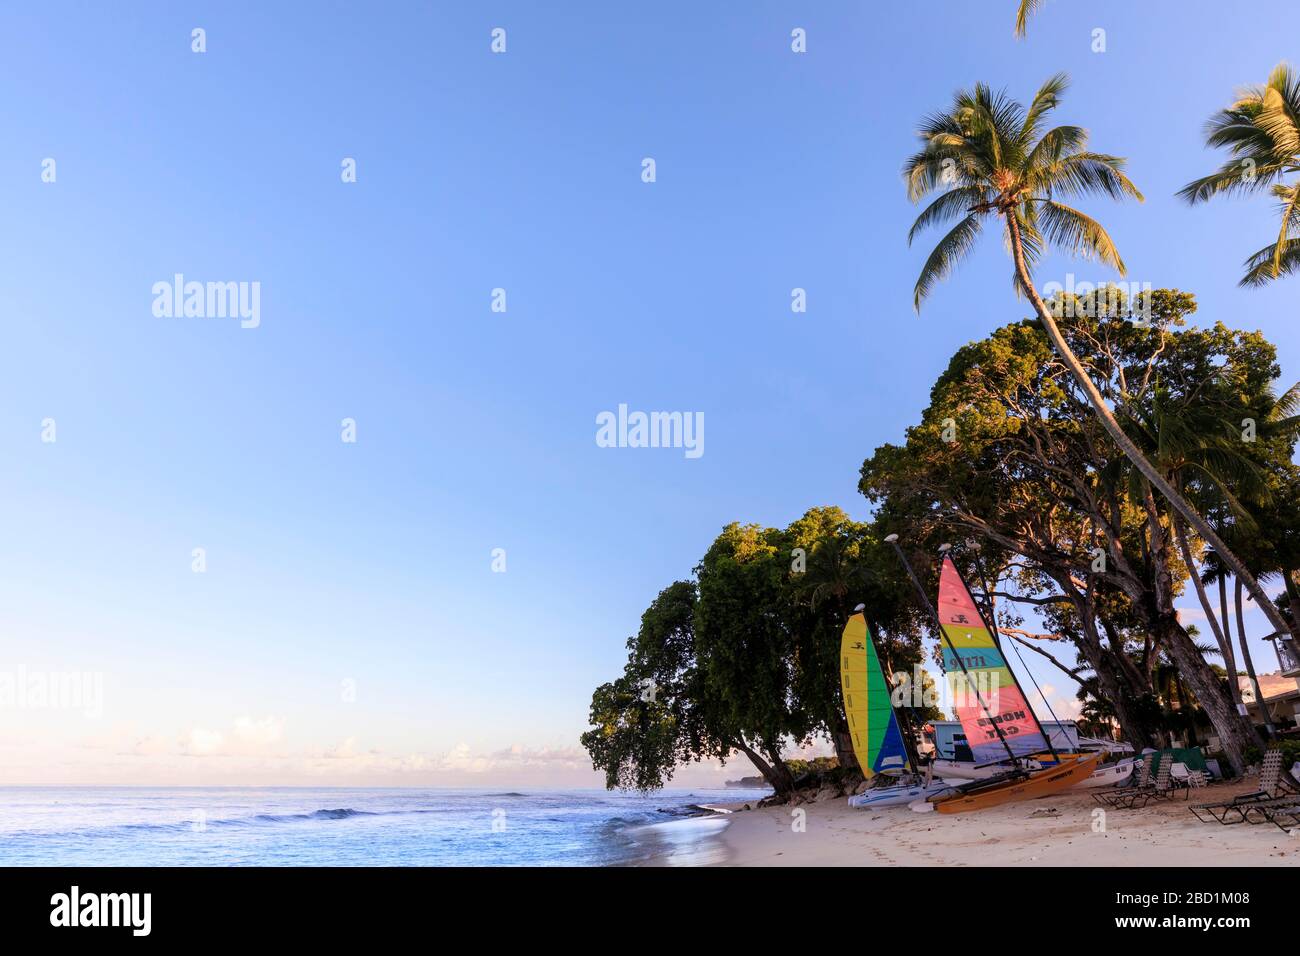 Paynes Bay, bateaux à voile colorés sur plage de sable rose, lever du soleil, palmiers, belle côte ouest, Barbade, îles Windward, Caraïbes Banque D'Images